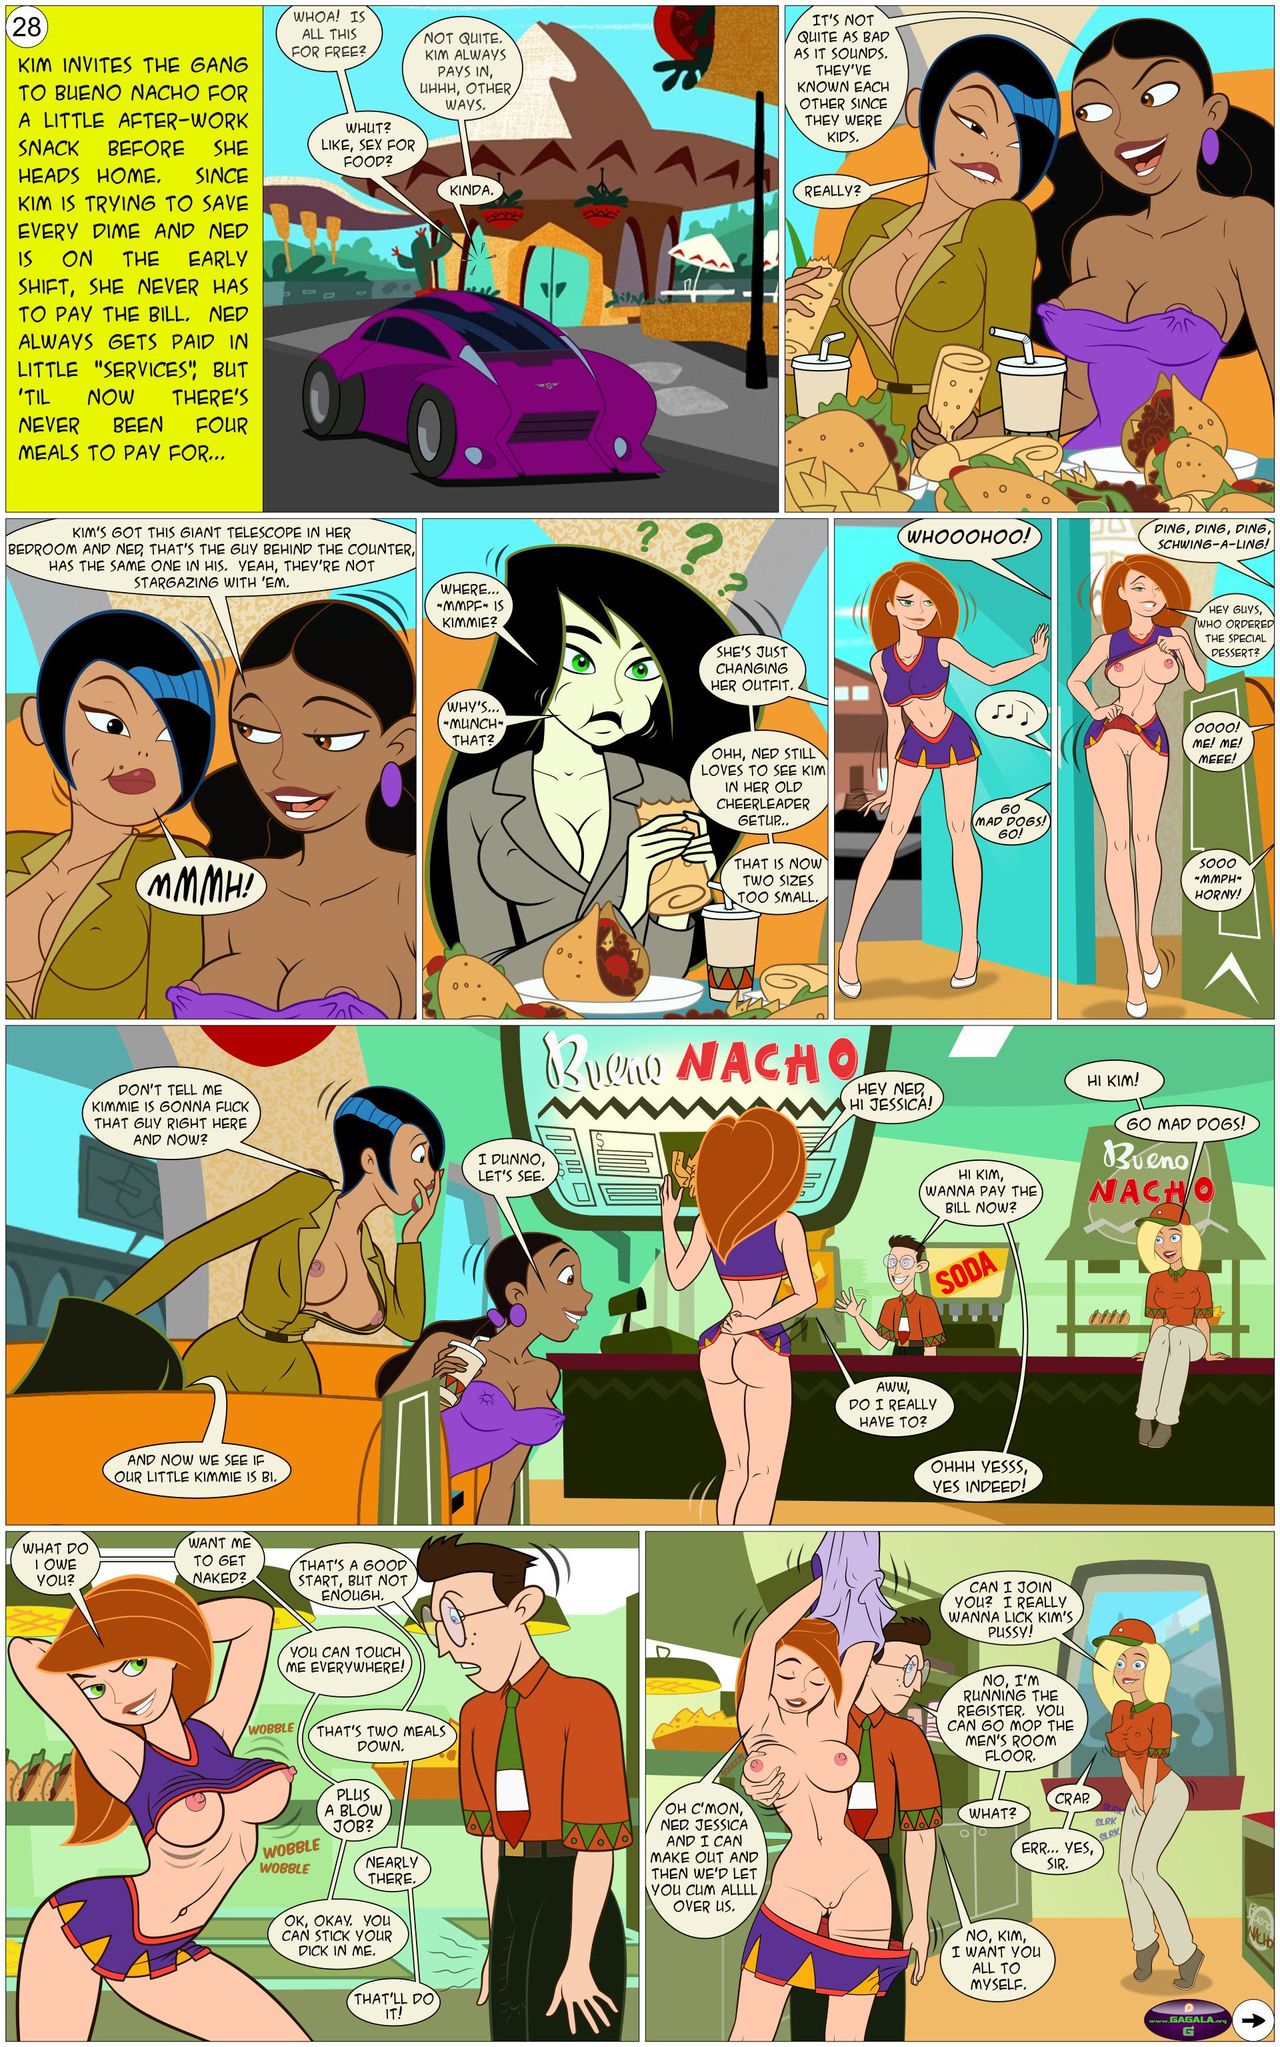 1280px x 2047px - Tale of Kiki Possible â€¢ Jab Comix Kim Porn Comics